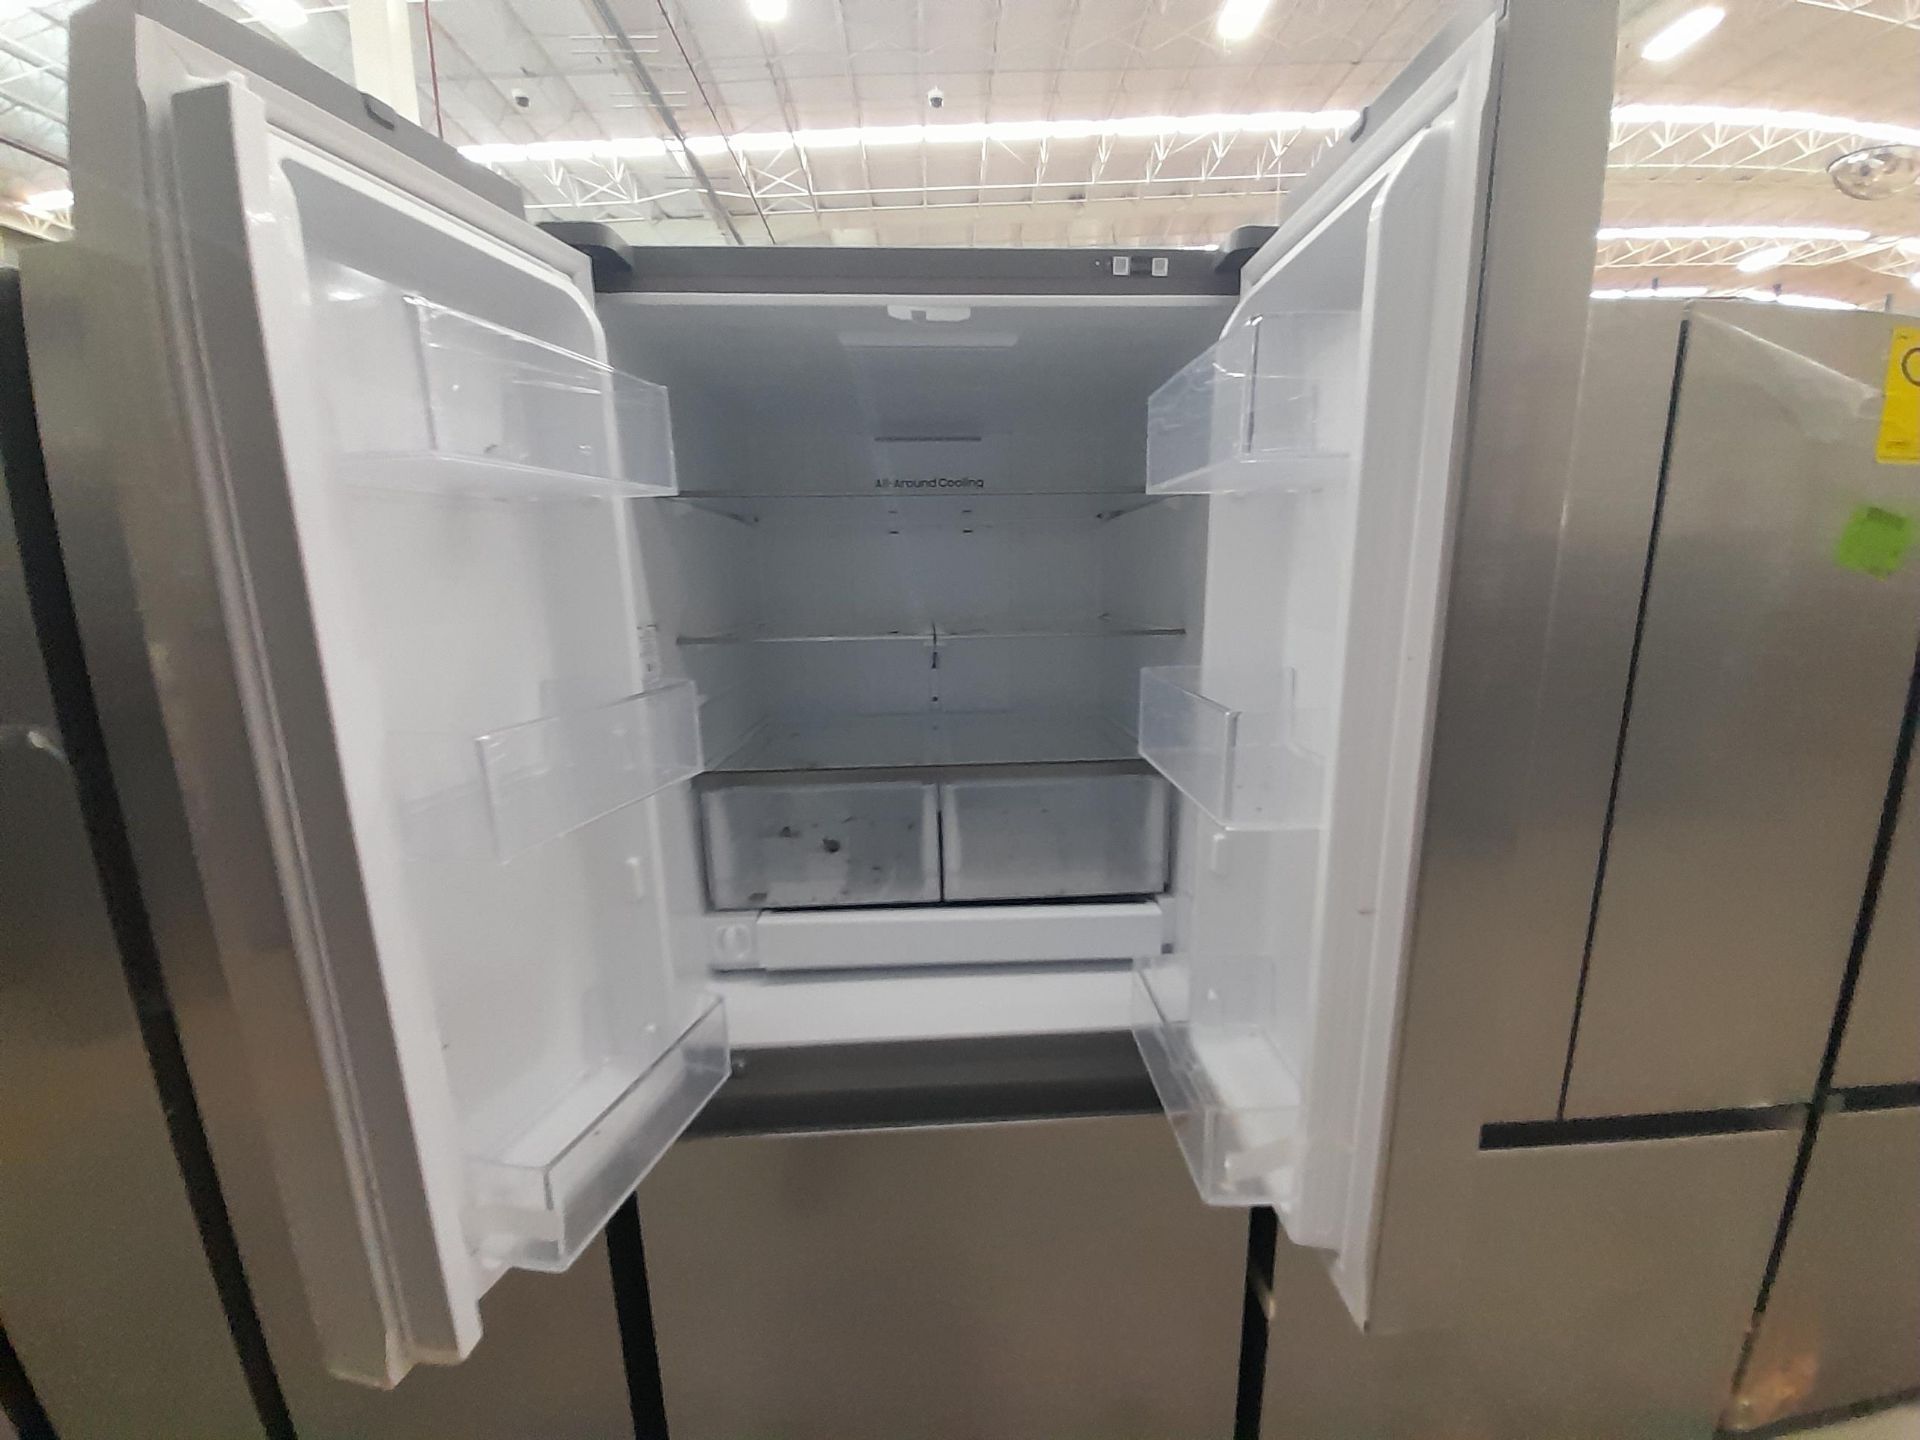 Lote de 1 Refrigerador Marca SAMSUNG, Modelo RF25C5151S9, Color GRIS (No se asegura su funciona - Image 4 of 5